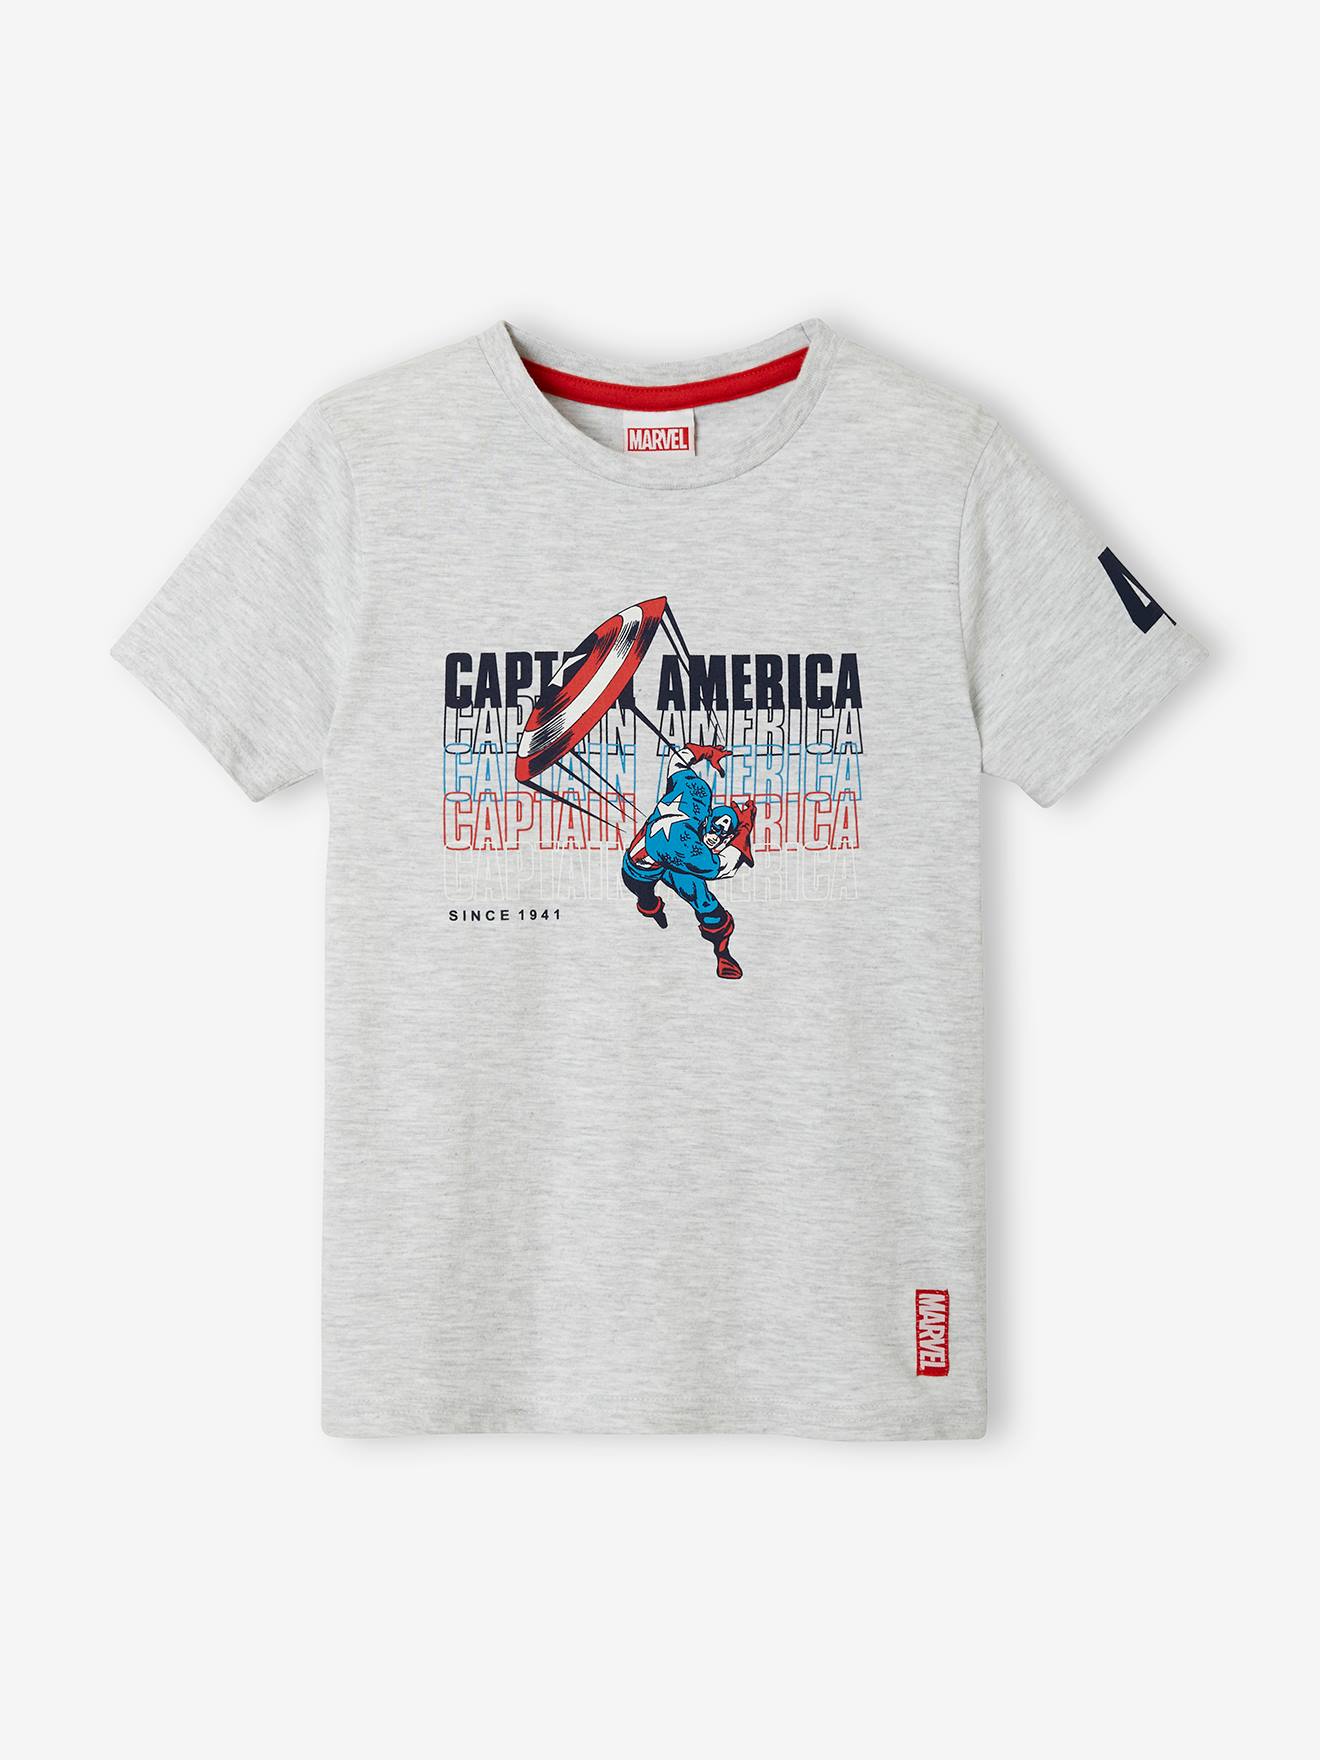 Avengers Ensemble T Shirt Short Garçon